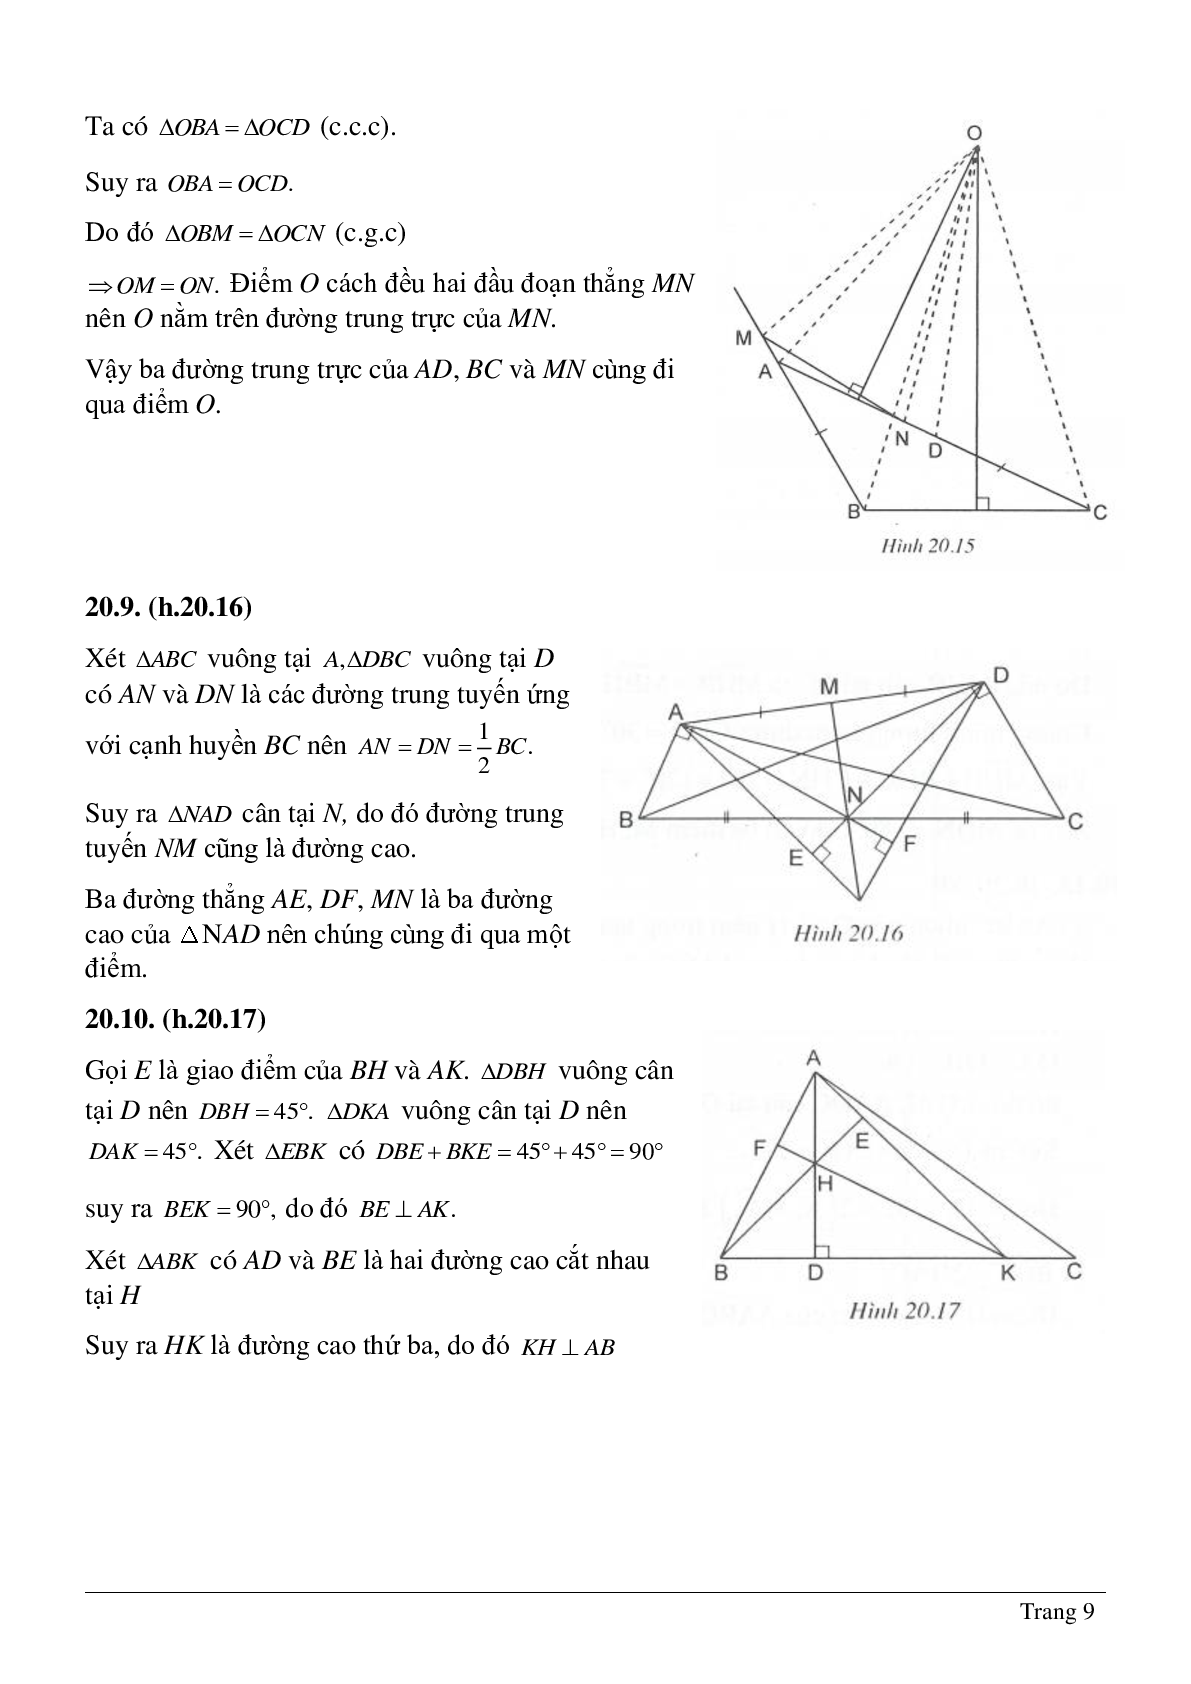 Tổng hợp những bài tập về Tính chất ba đường trung trực, ba đường cao của tam giác có lời giải (trang 9)